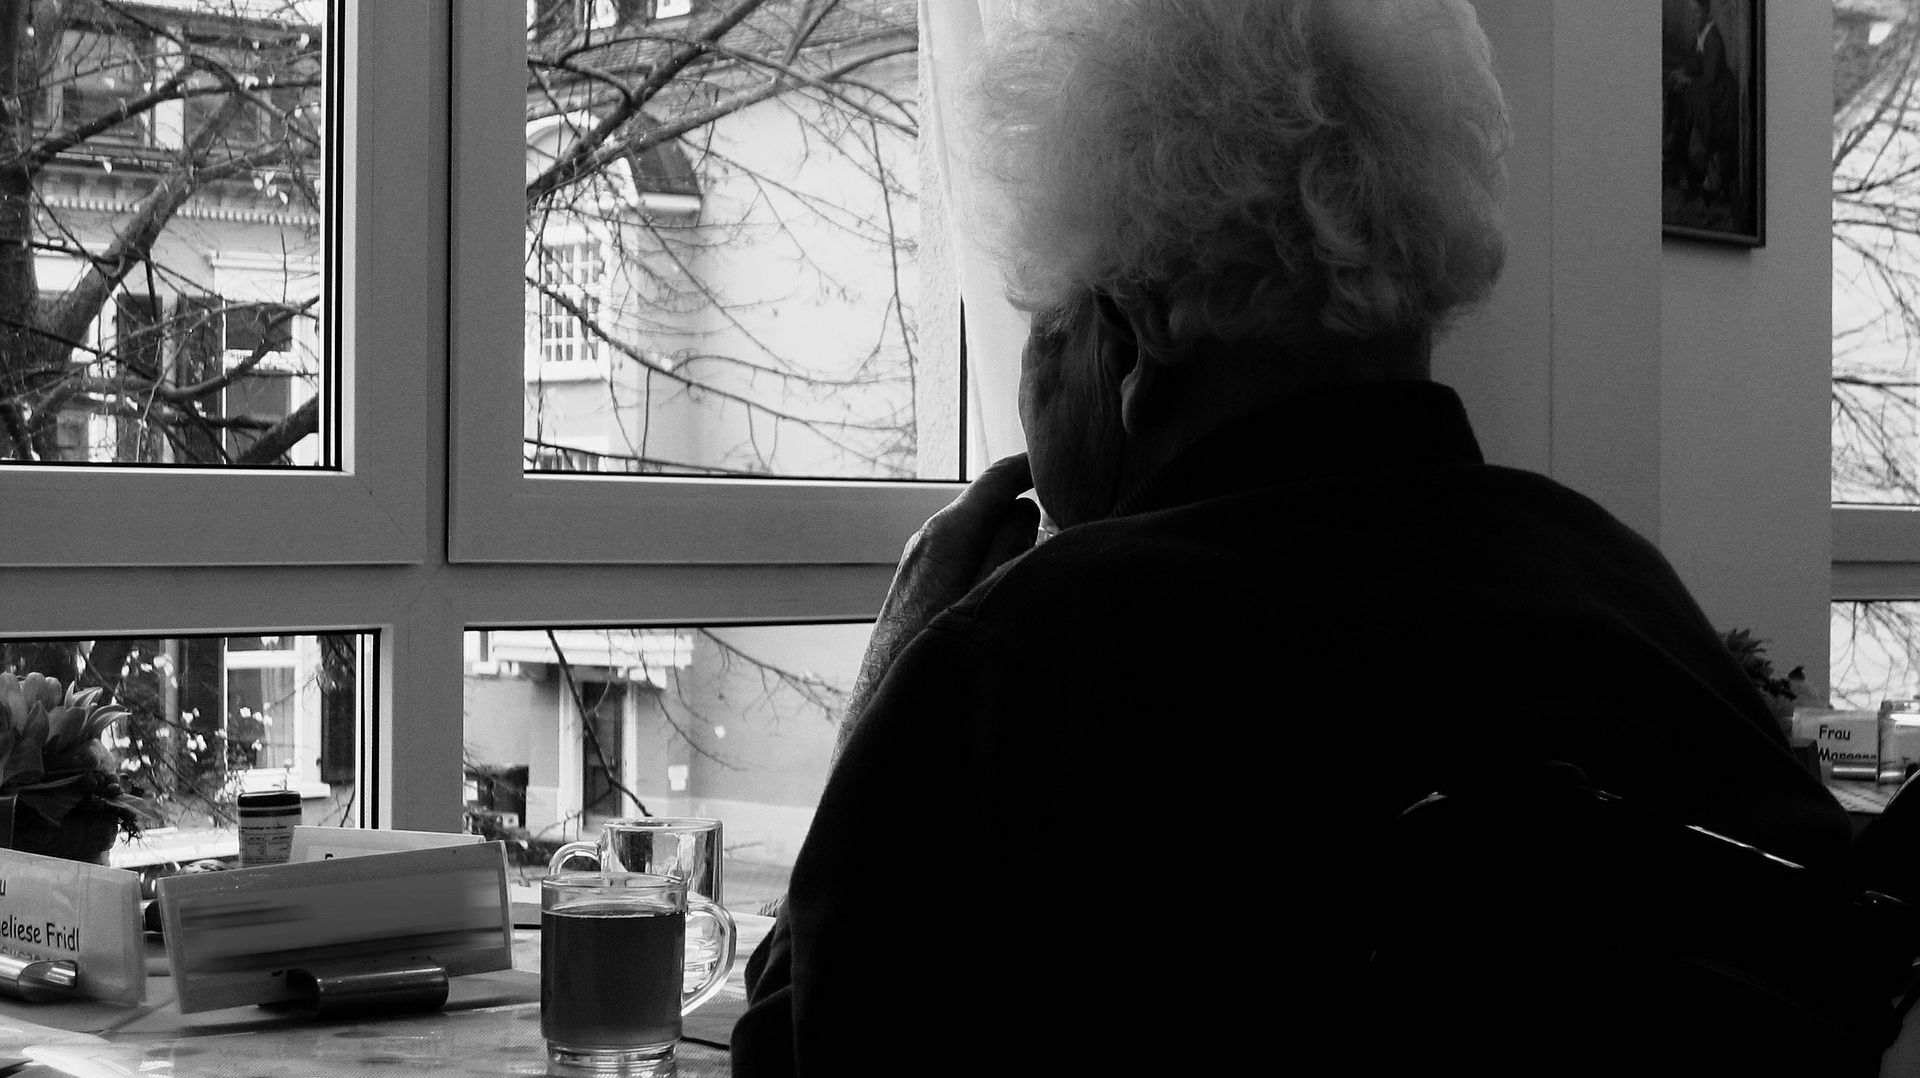 La police de Liège signe un protocole avec la Ligue Alzheimer sur les disparitions d'aînés